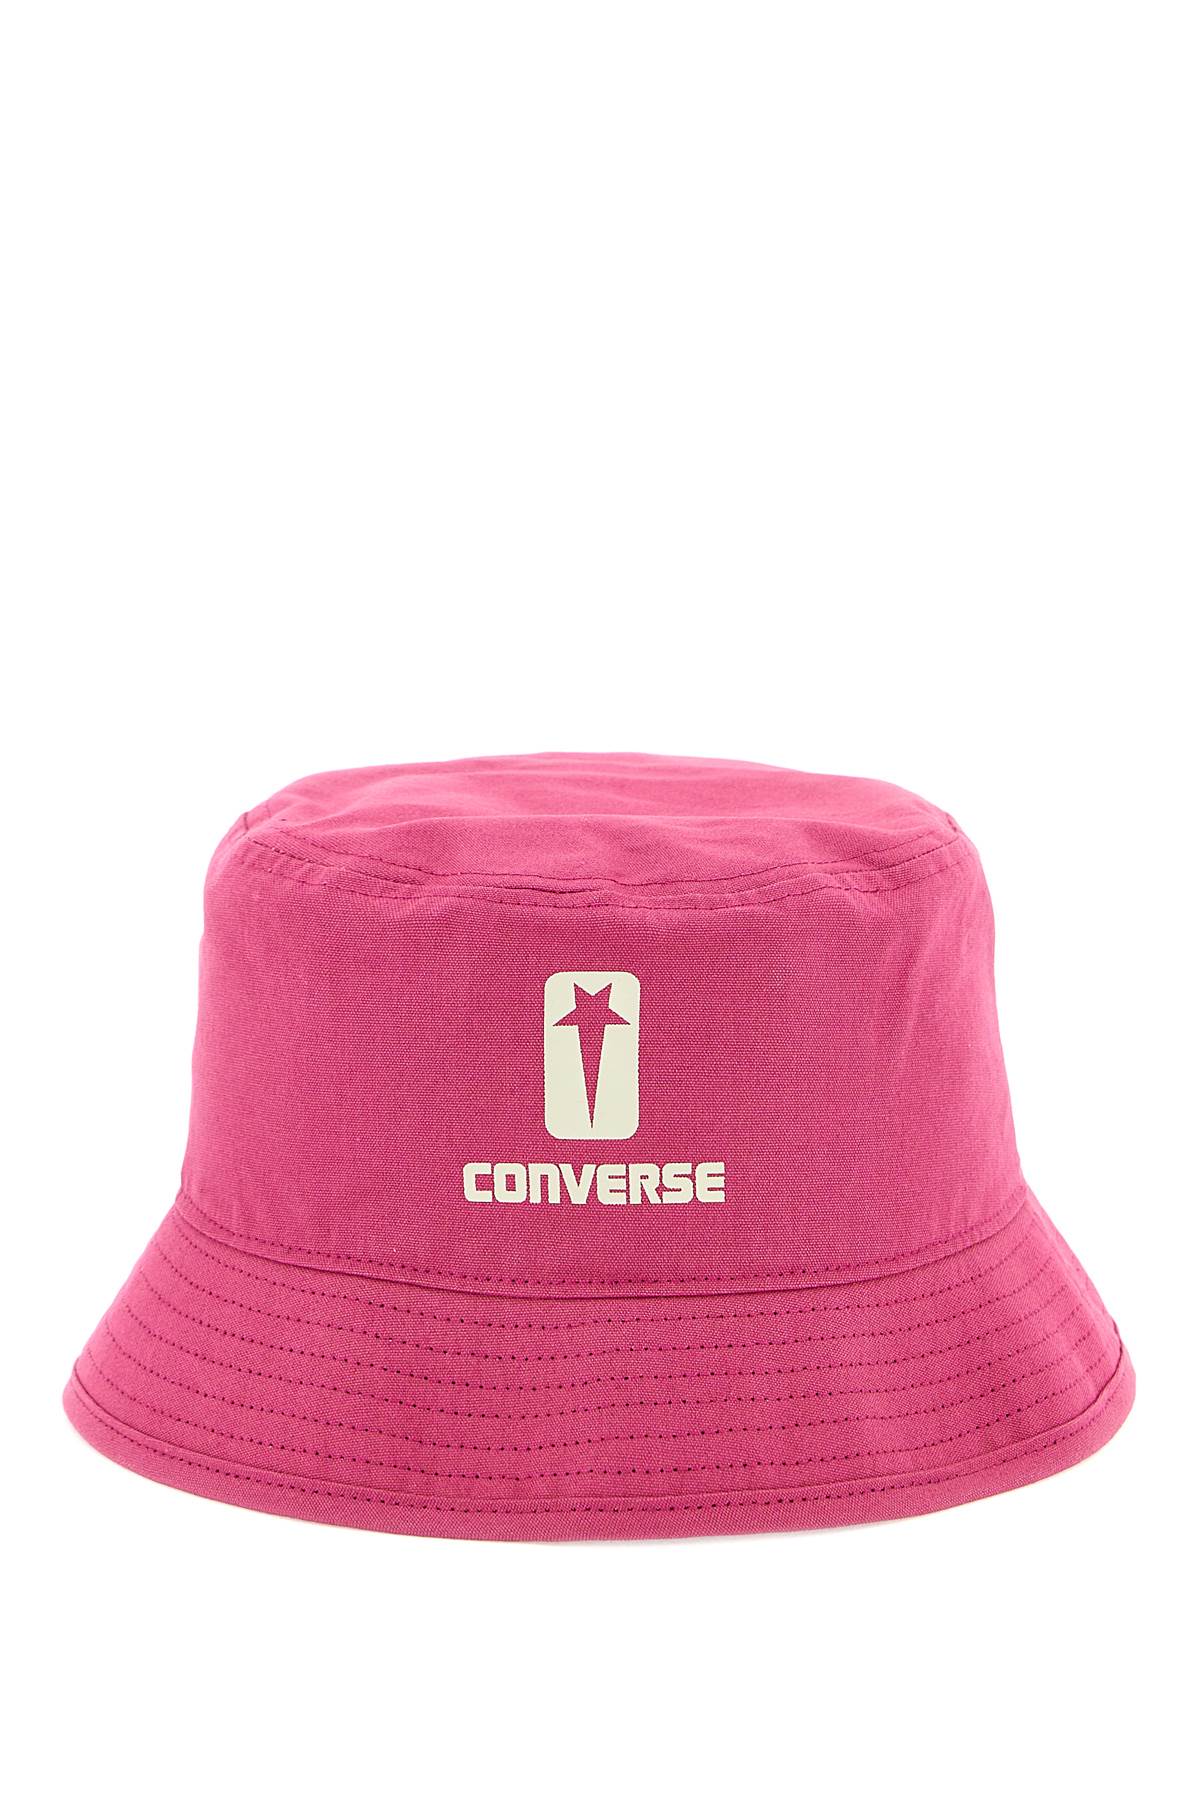 Drkshw X Converse Bucket Hat